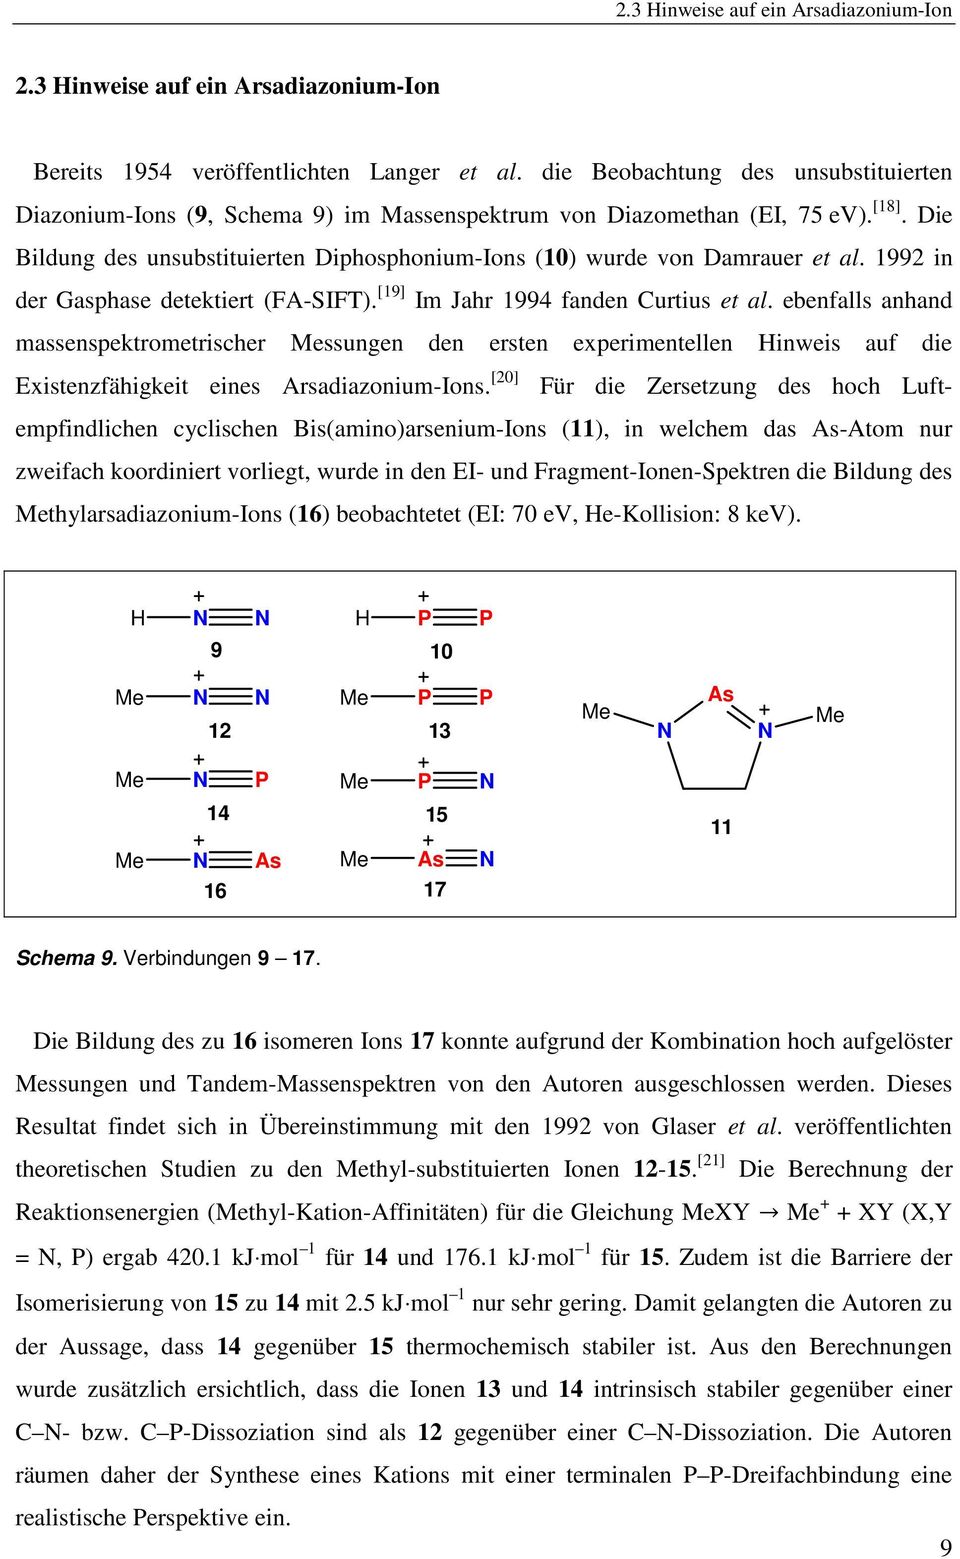 Die Bildung des unsubstituierten Diphosphonium-Ions (10) wurde von Damrauer et al. 1992 in der Gasphase detektiert (FA-SIFT). [19] Im Jahr 1994 fanden Curtius et al.